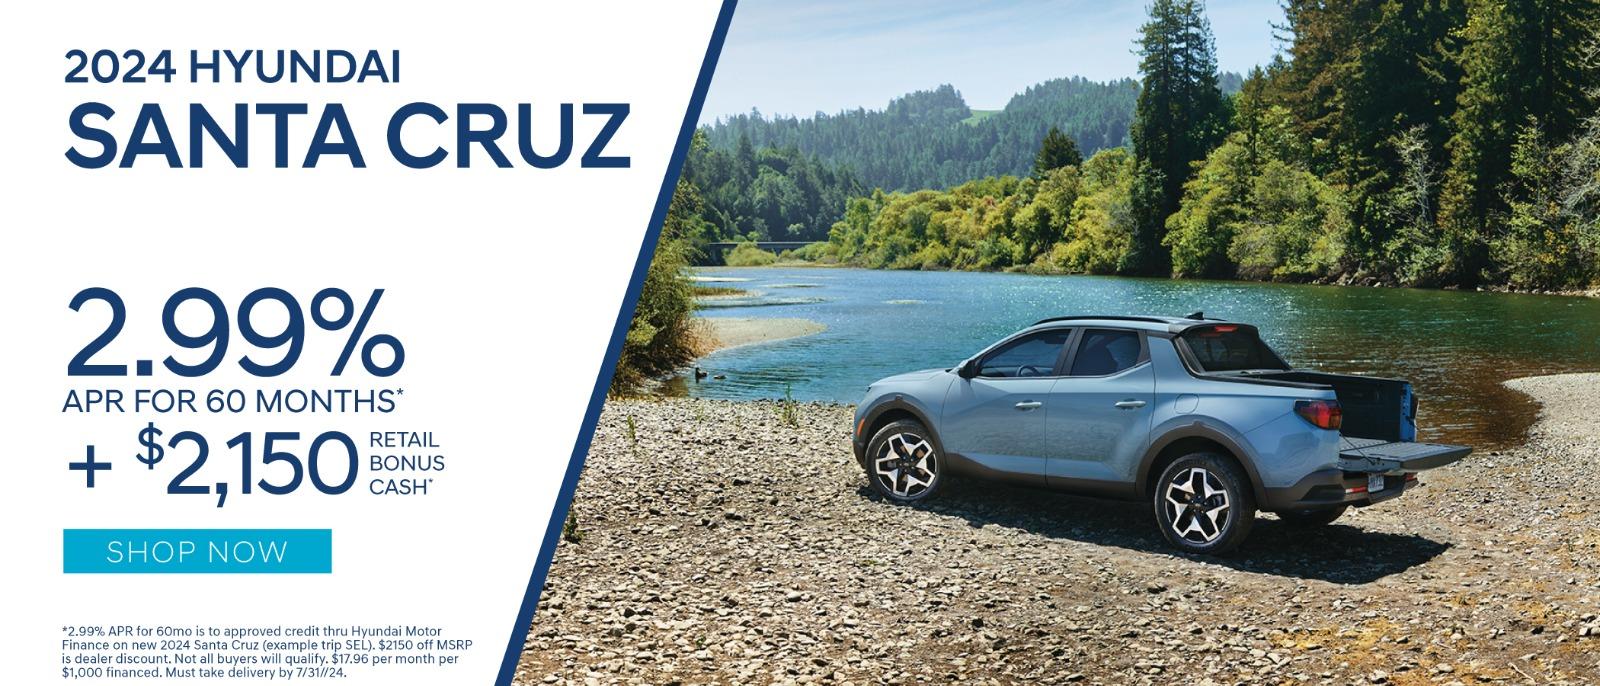 2024 Hyundai Santa Cruz 2.99% up to 60 months